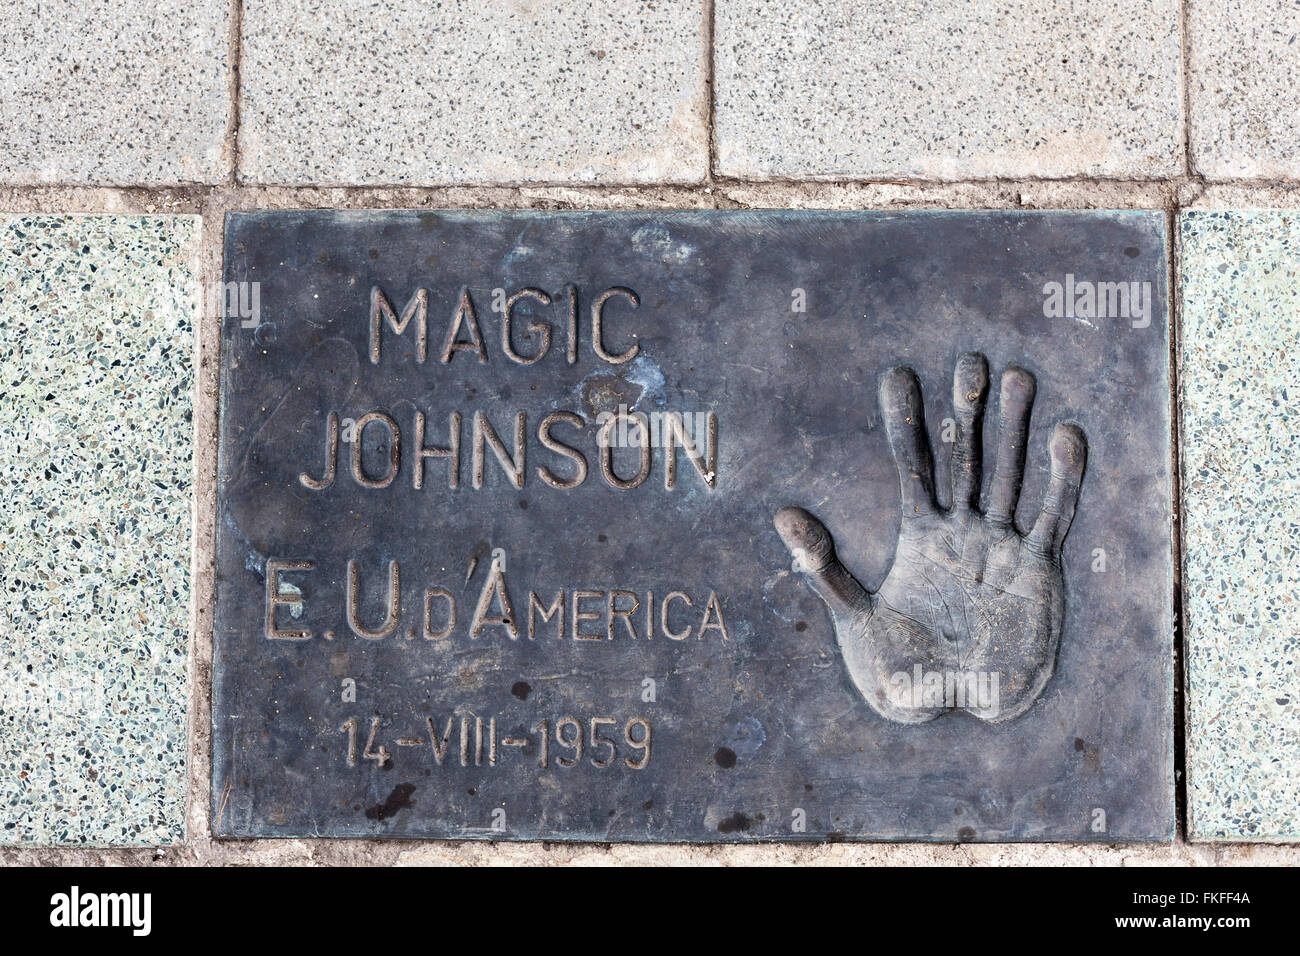 Print hand floor of Magic Johnson in Plaza dels Campions, Parc de la Nova Icària, Vila Olimpica, Barcelona. Stock Photo